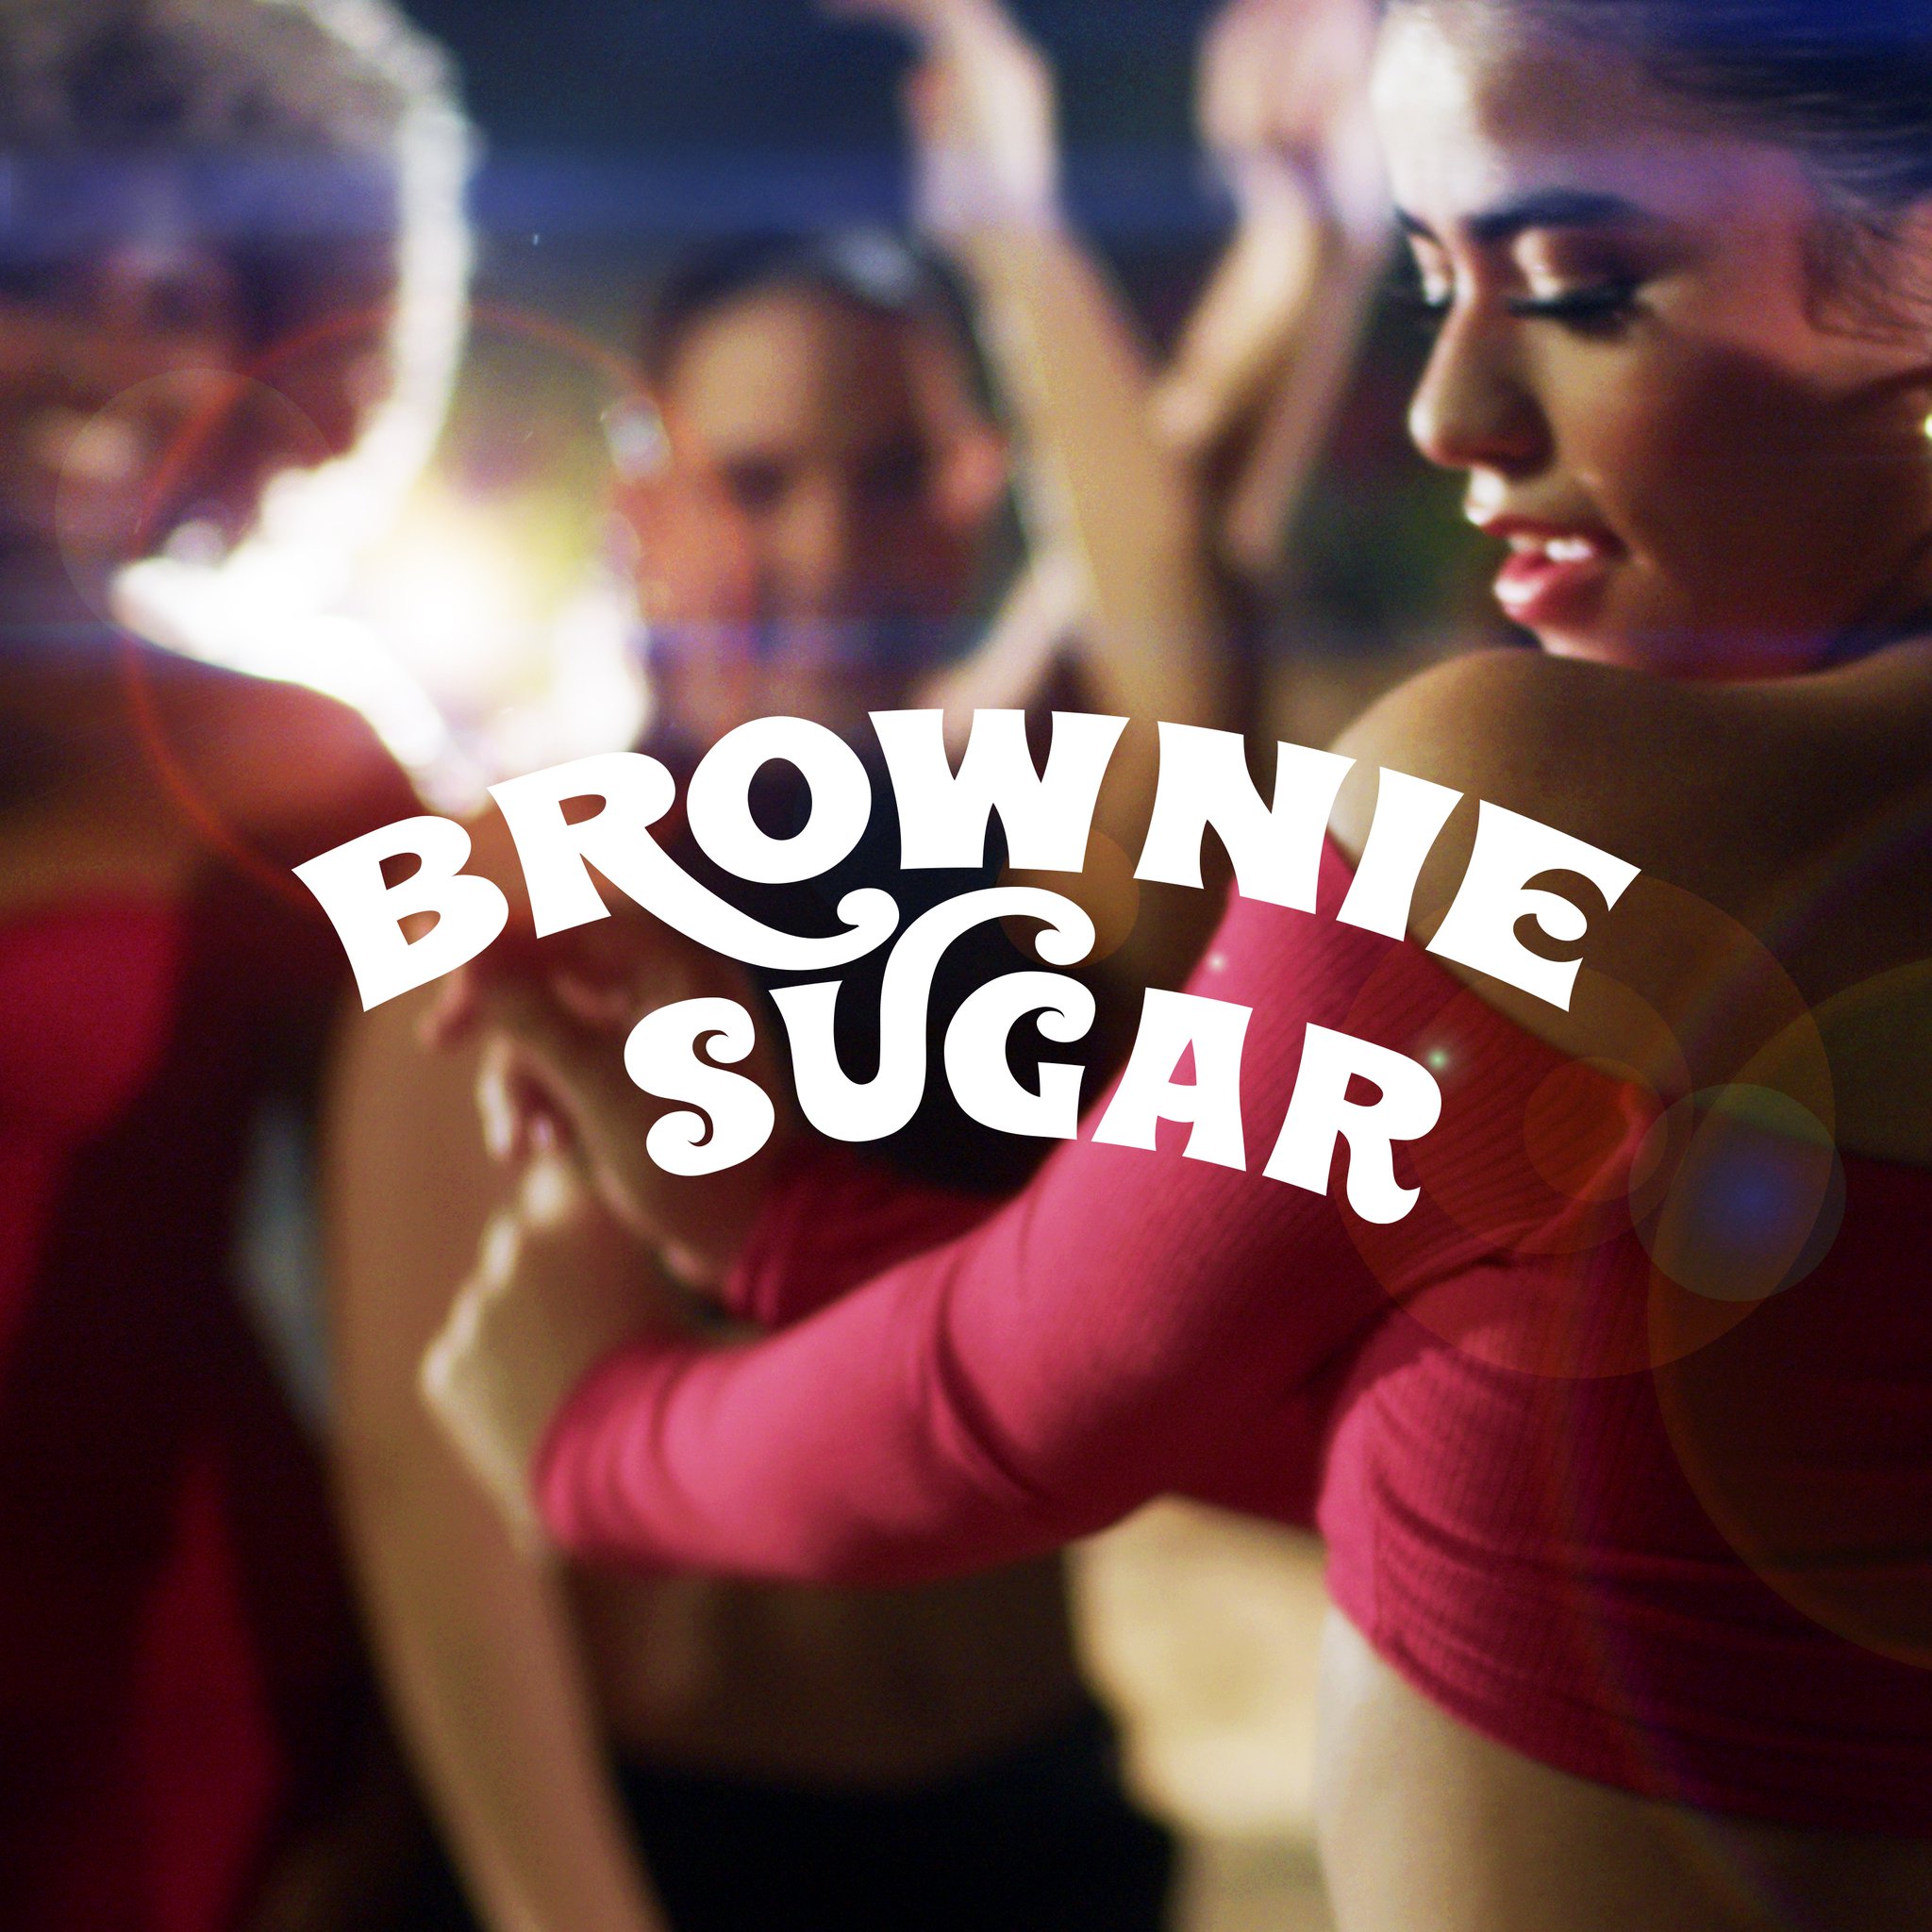 Brownie Sugar